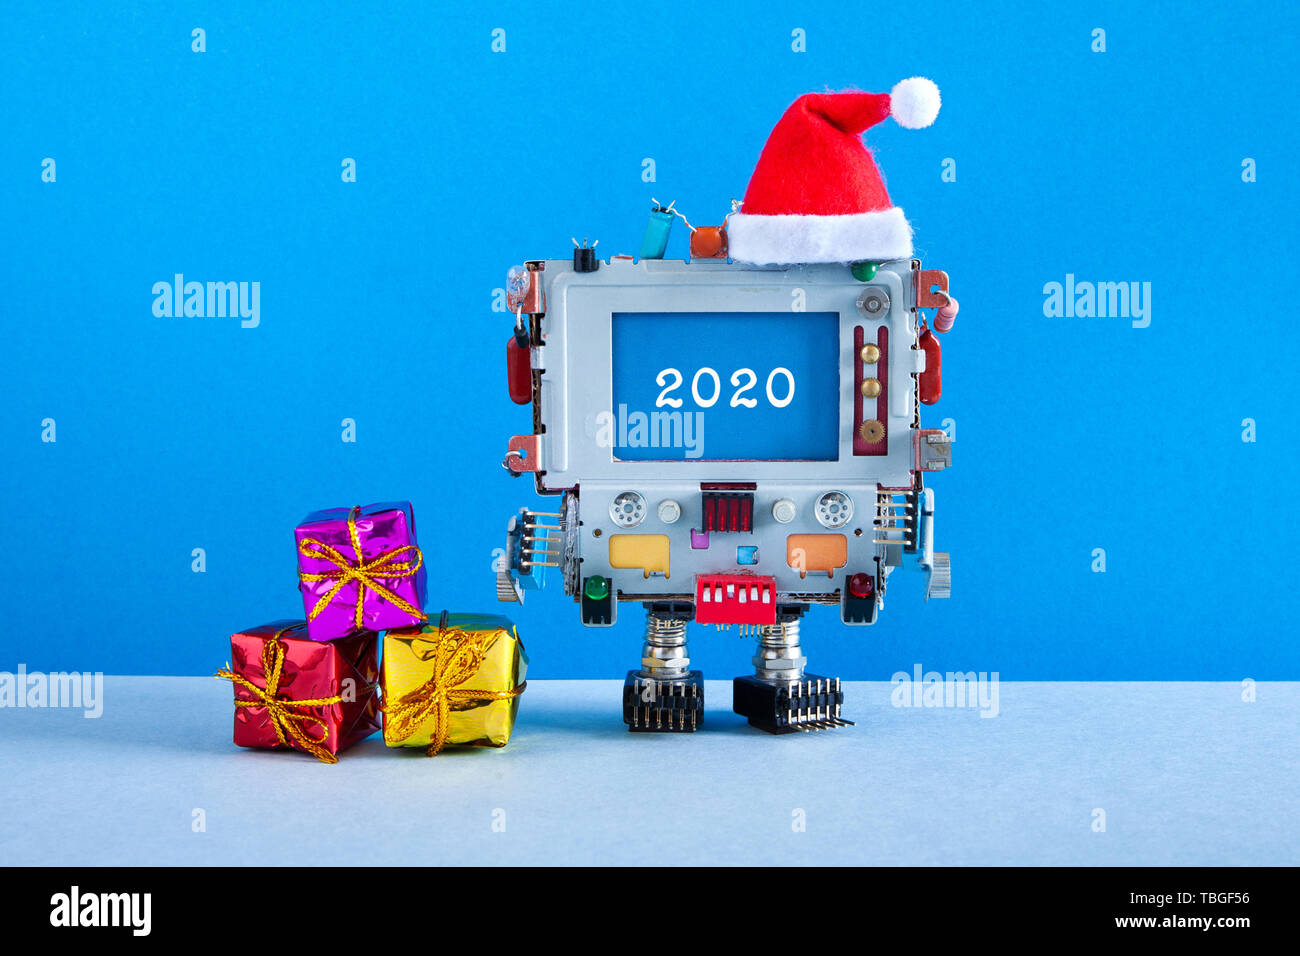 Frohe Weihnachten Happy Jahr Grusskarte Robotik Computer Santa Claus Red Hat Und Geschenkboxen Und Gluckwunschbotschaft Auf Blauen Bildschirm Mod Stockfotografie Alamy